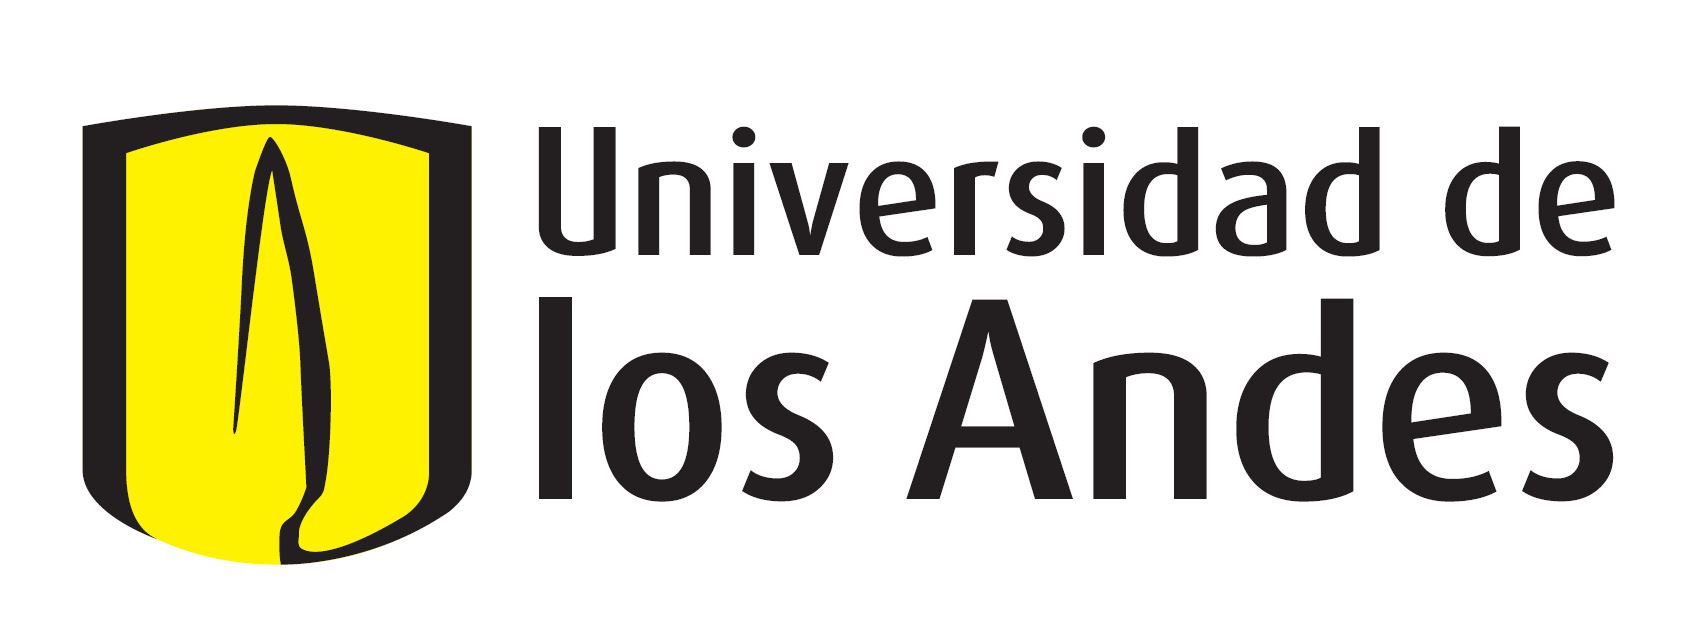 Logo: Universidad de los Andes